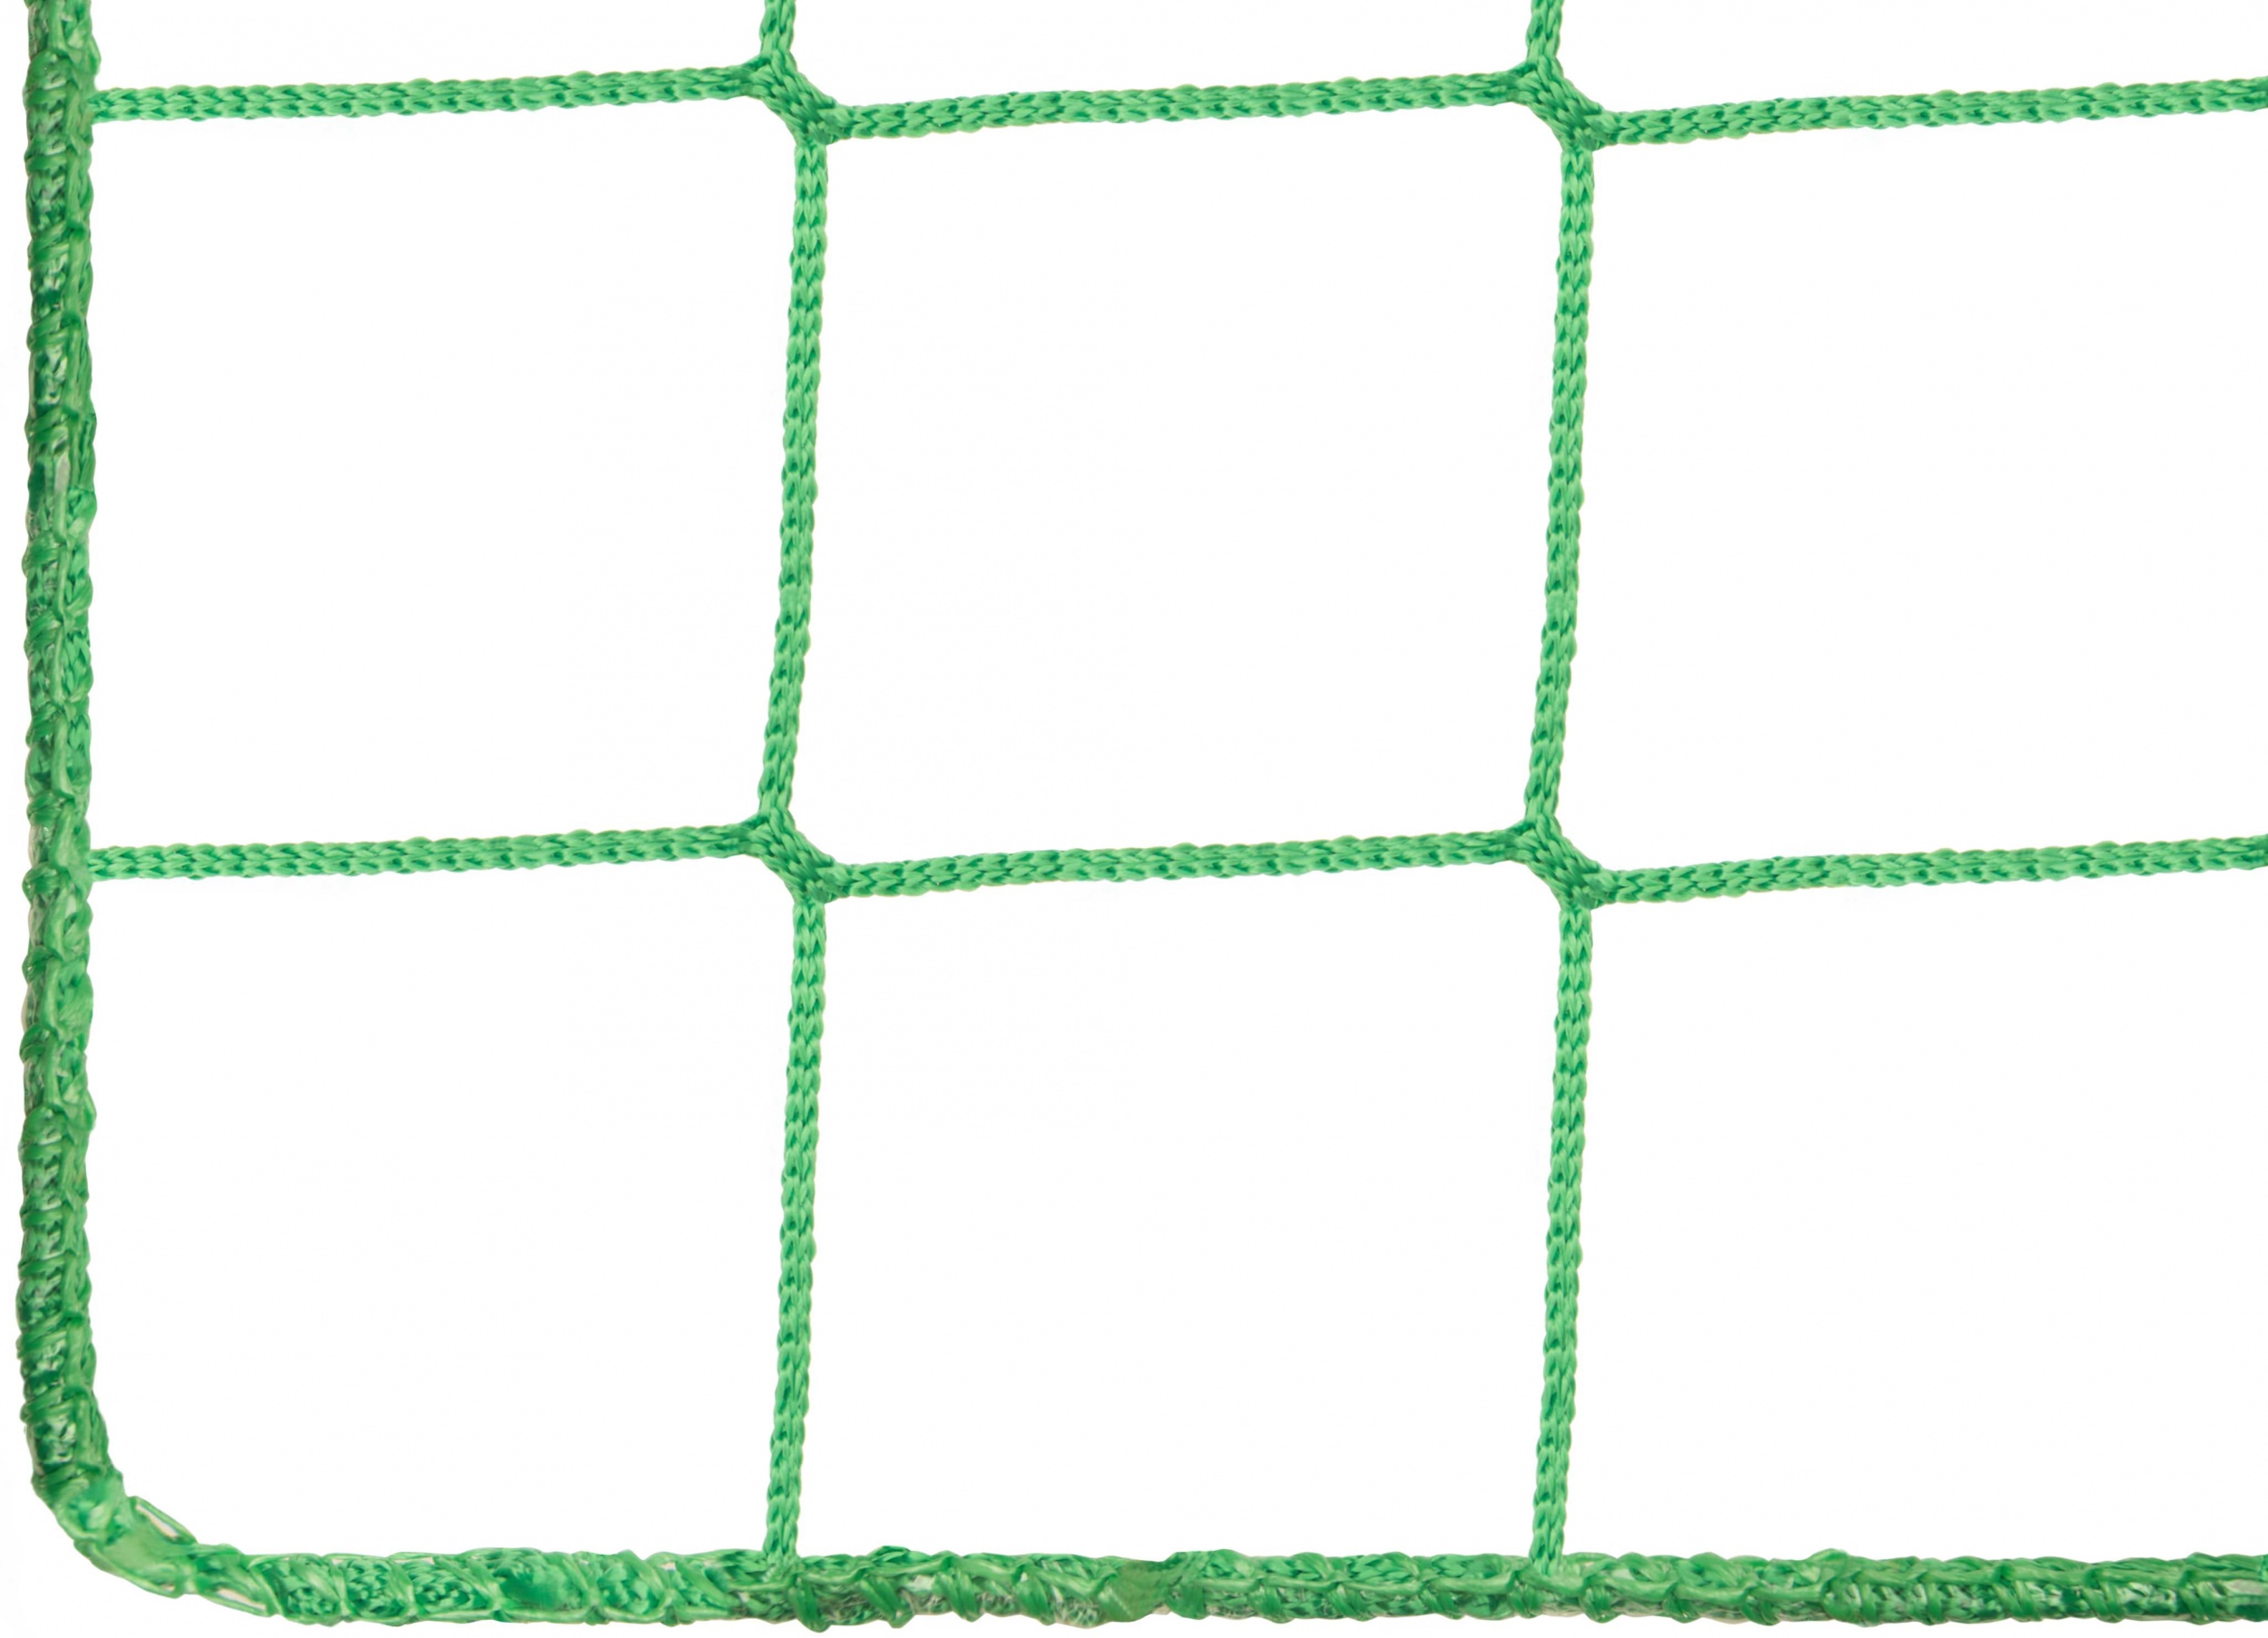 Ballfangnetz  2,00 m x 30 m  oliv  Maschenweite 5 cm  Ballnetz Fangnetz 